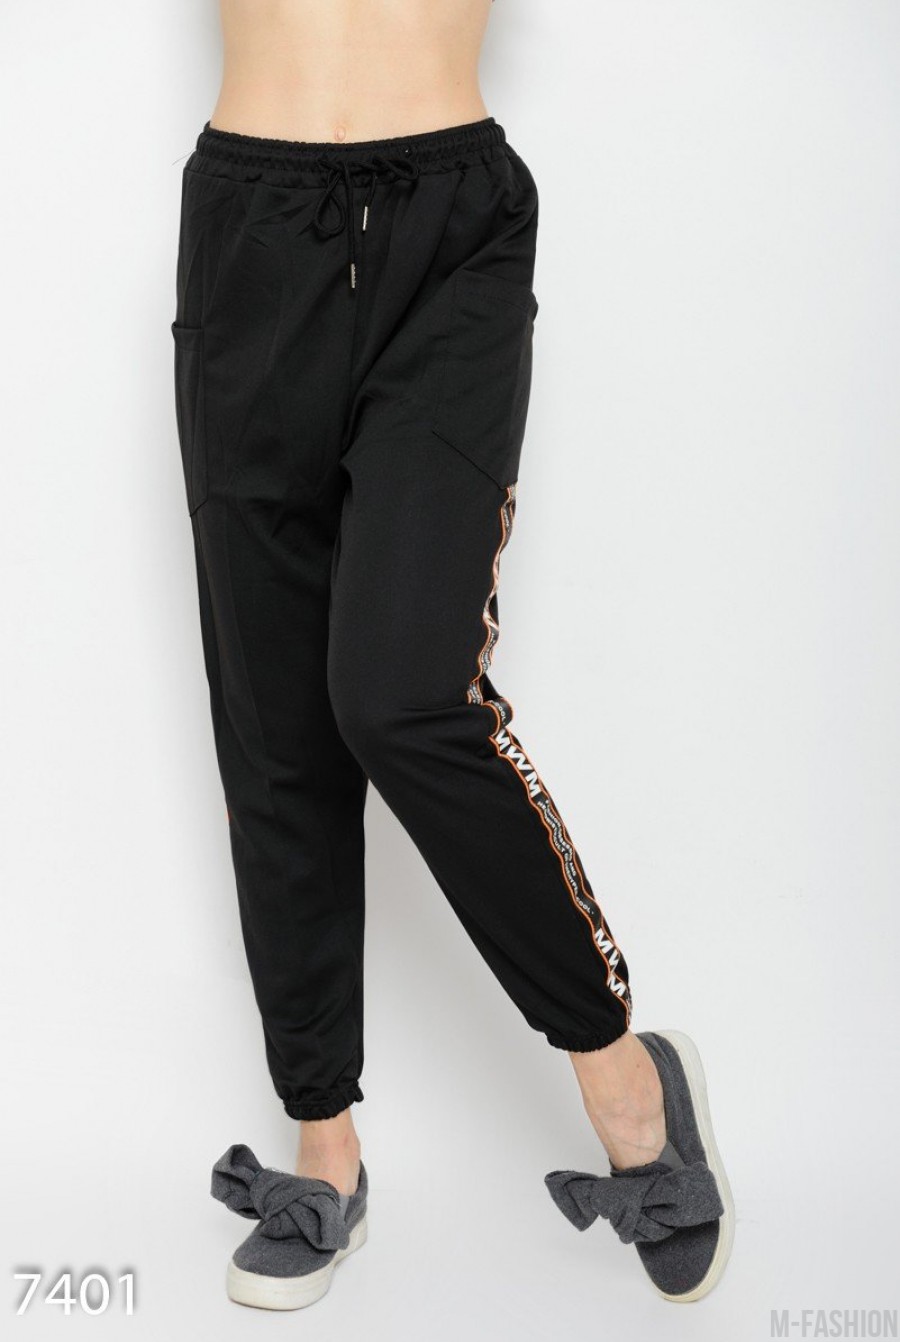 Черные свободные спортивные штаны с накладными карманами и декоративной тесьмой - Фото 1